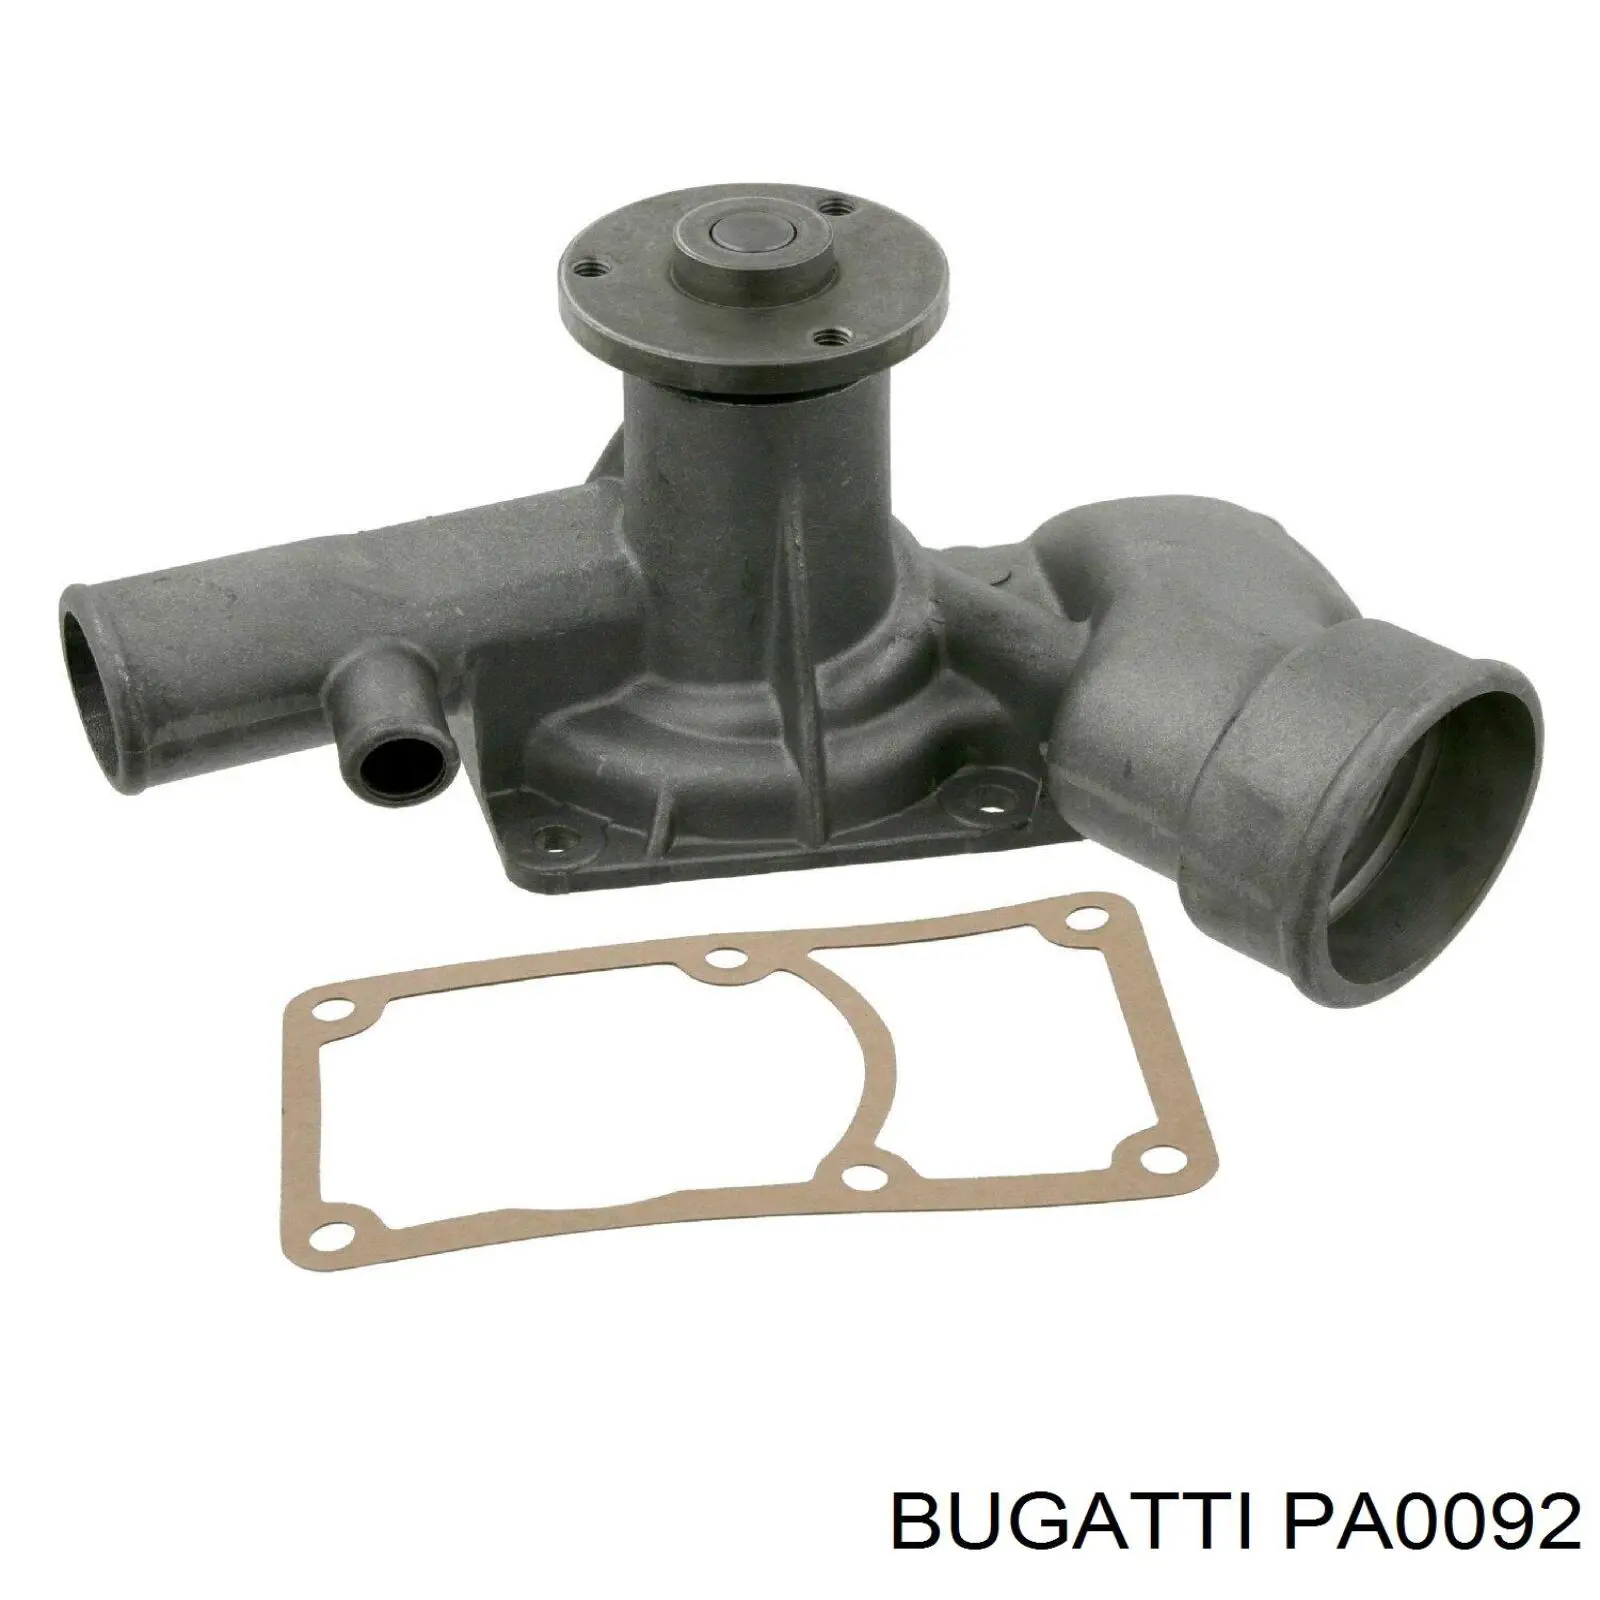 PA0092 Bugatti bomba de agua